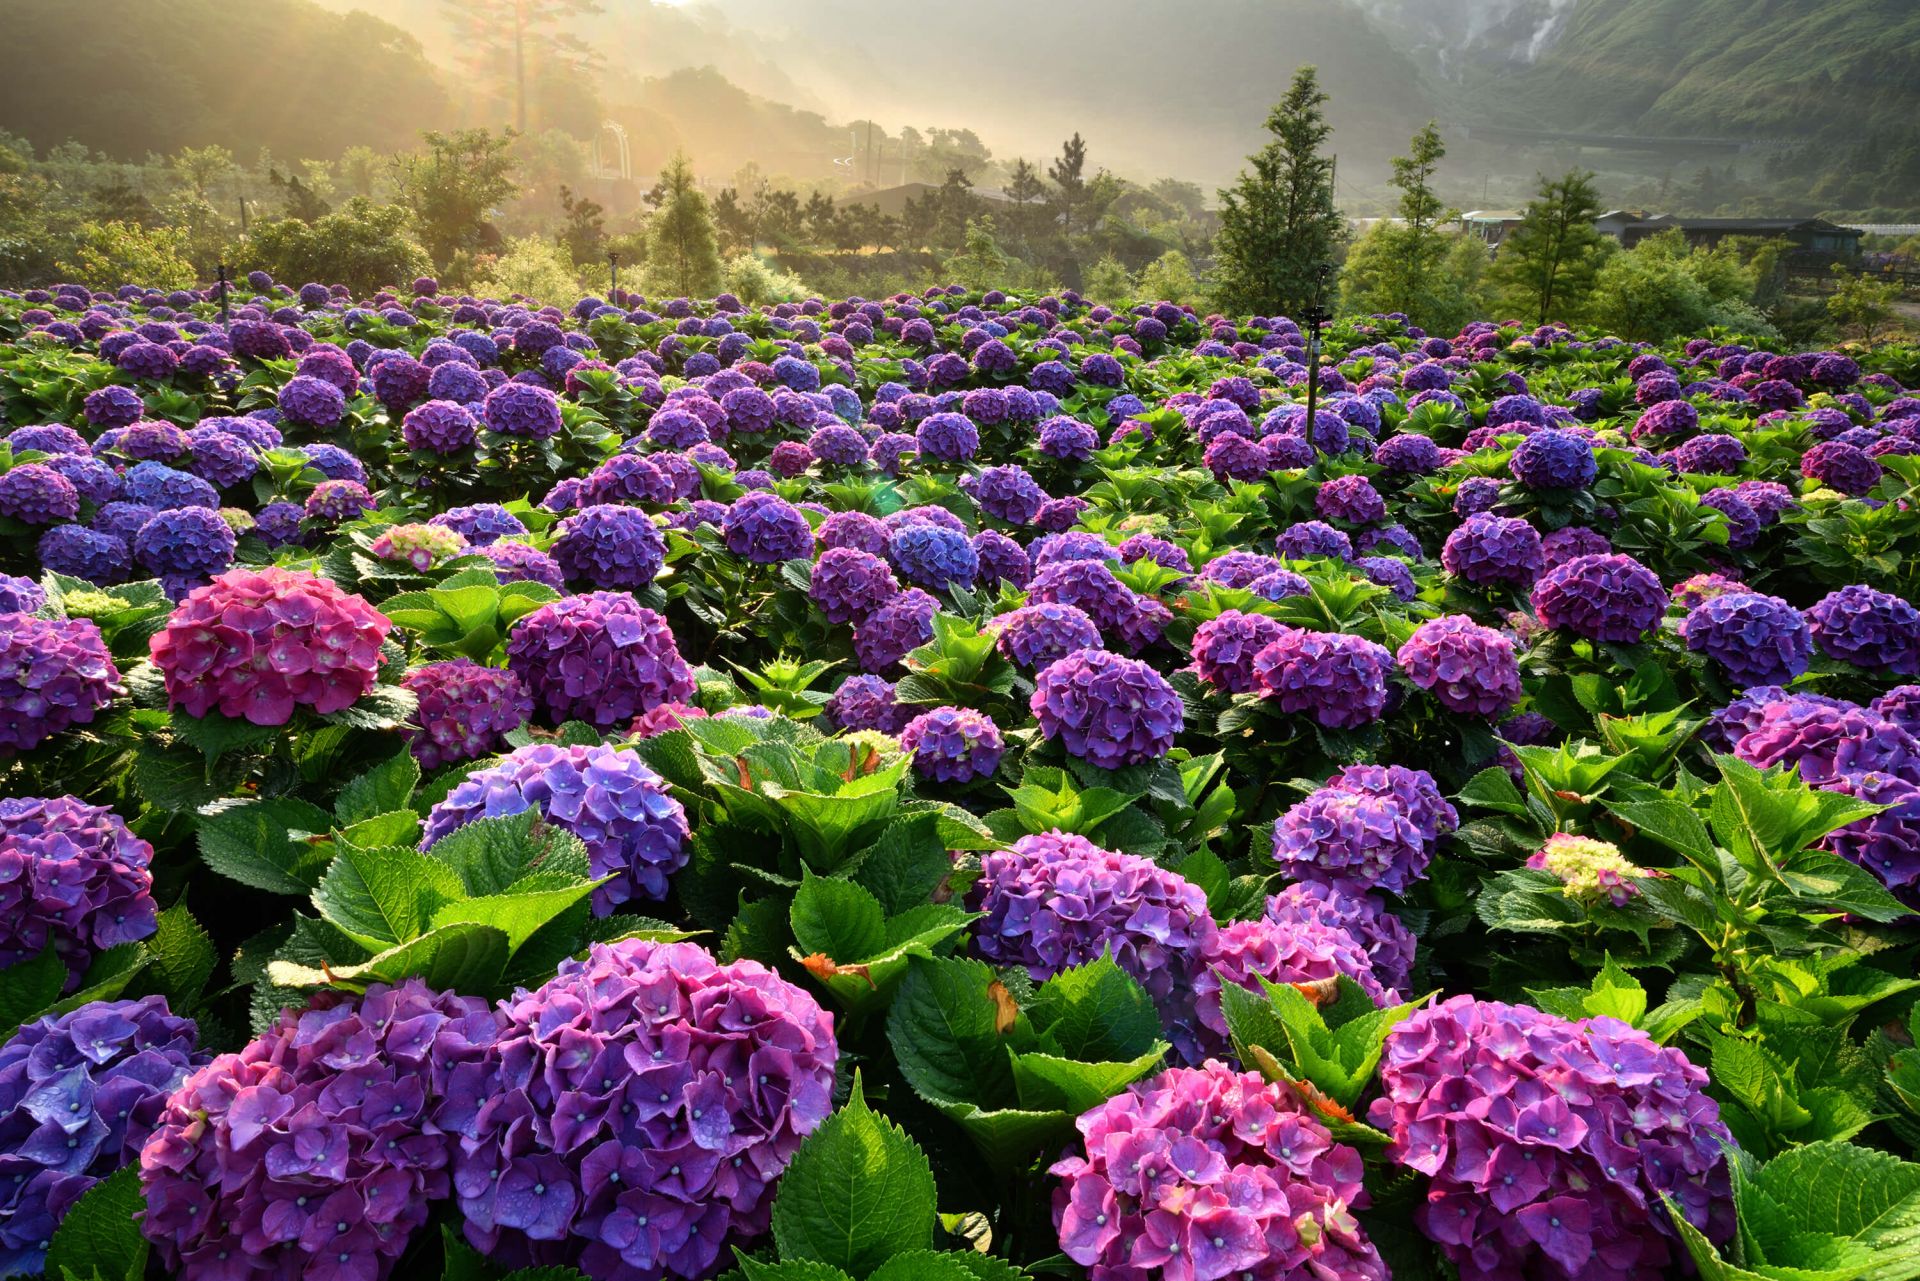 Hydrangea garden 1080P, 2K, 4K, 5K HD wallpapers free download | Wallpaper  Flare